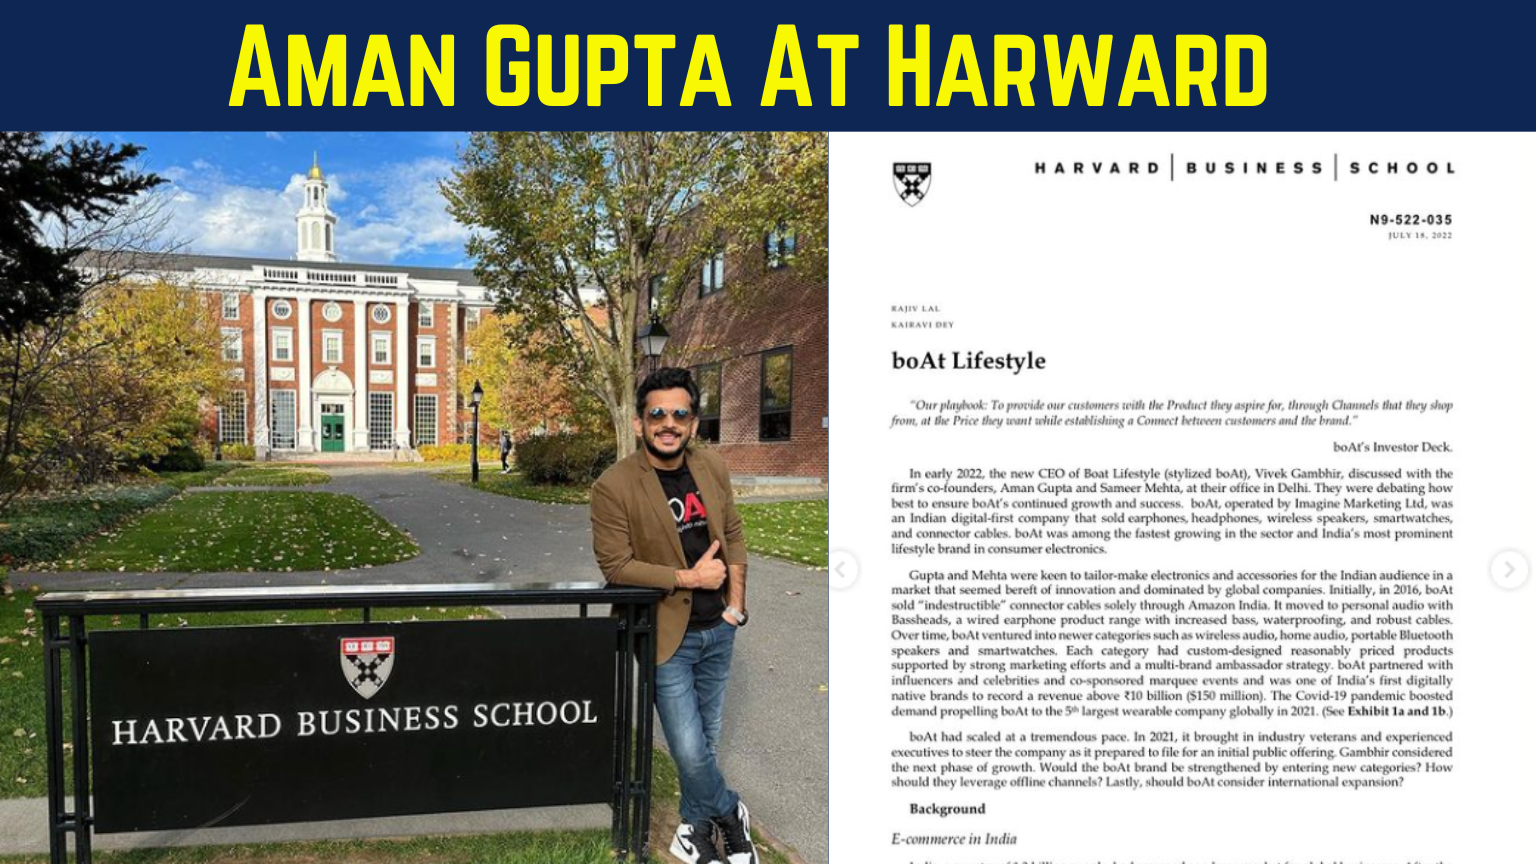 aman gupta at harward university